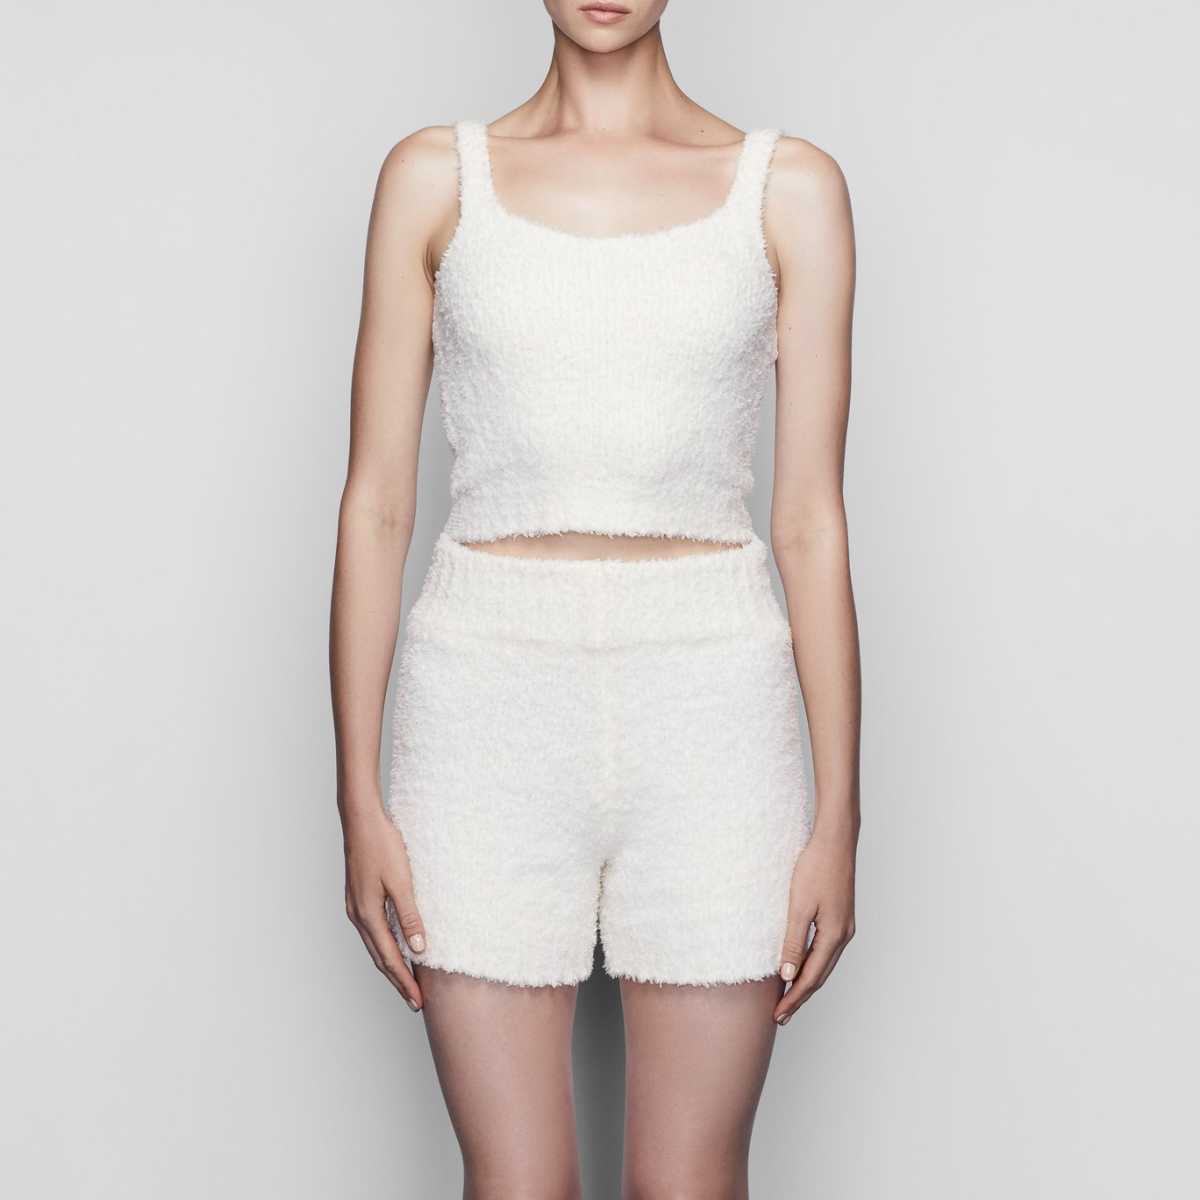 SKIMS - Skims Cozy Knit Shorts - Size S/M on Designer Wardrobe